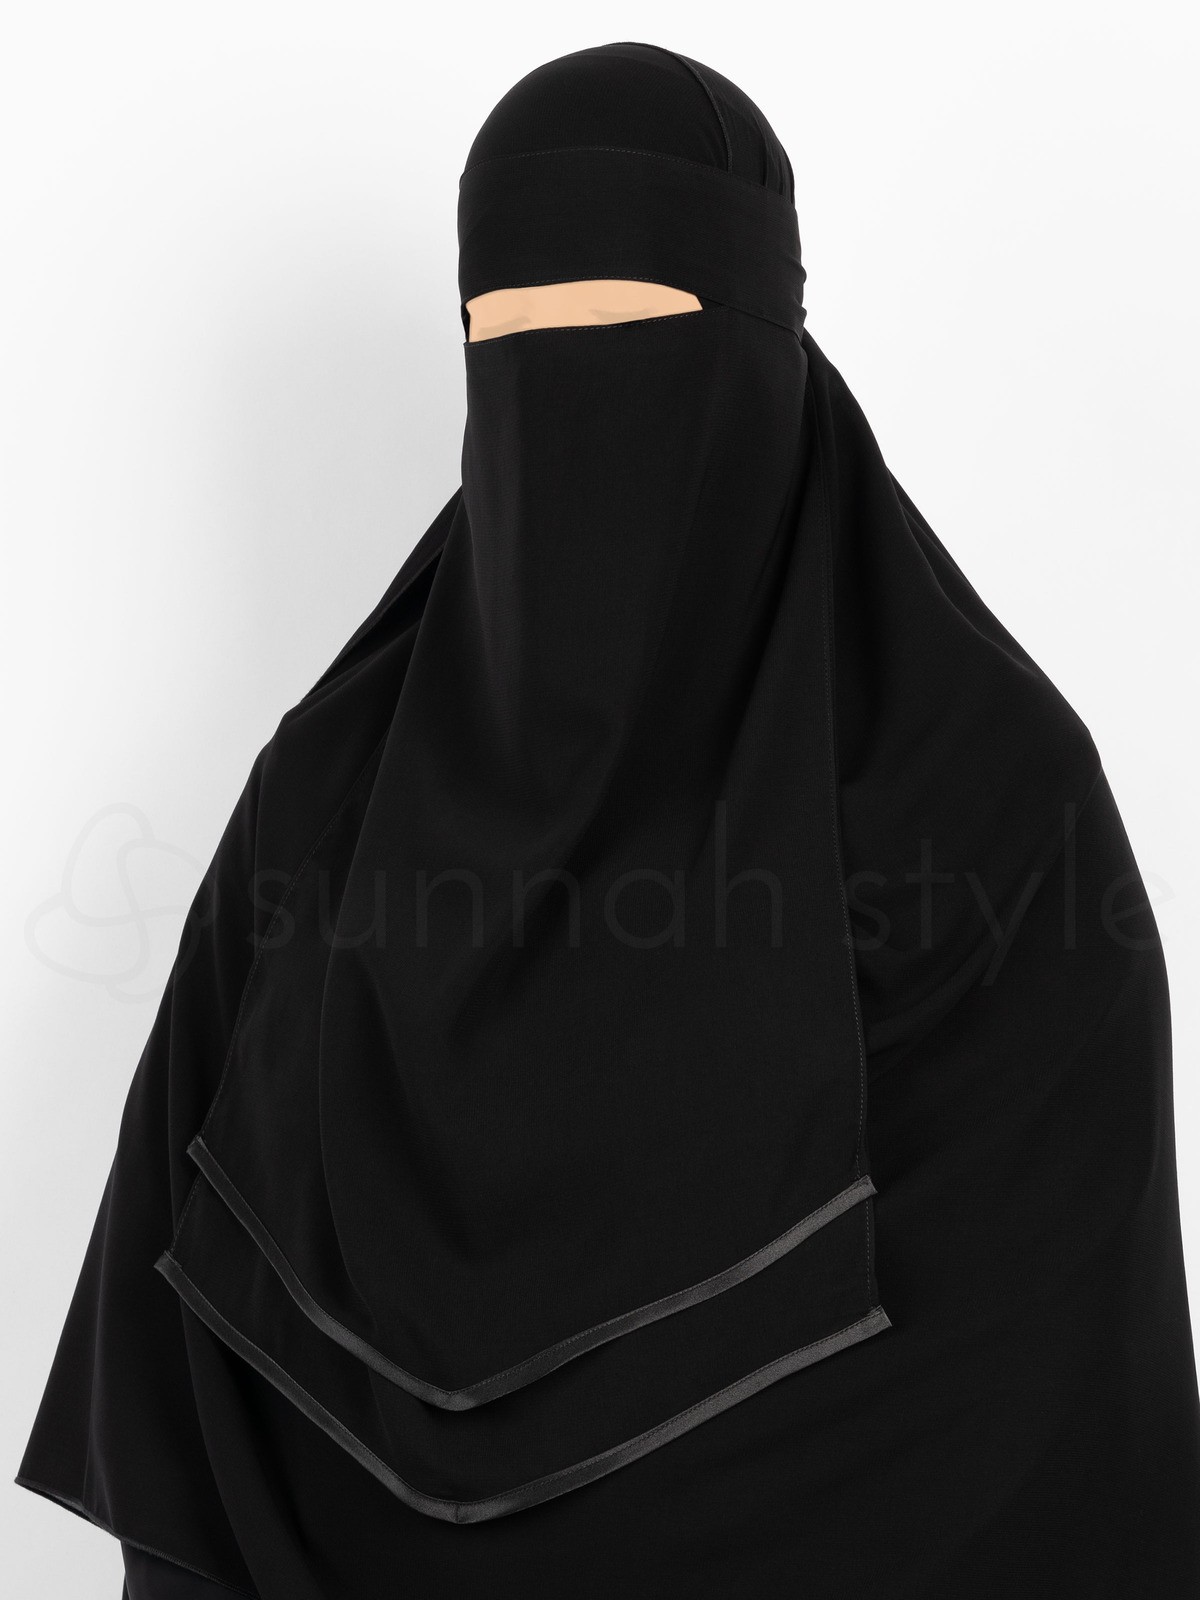 Sunnah Style - Double Satin V Niqab (Black)